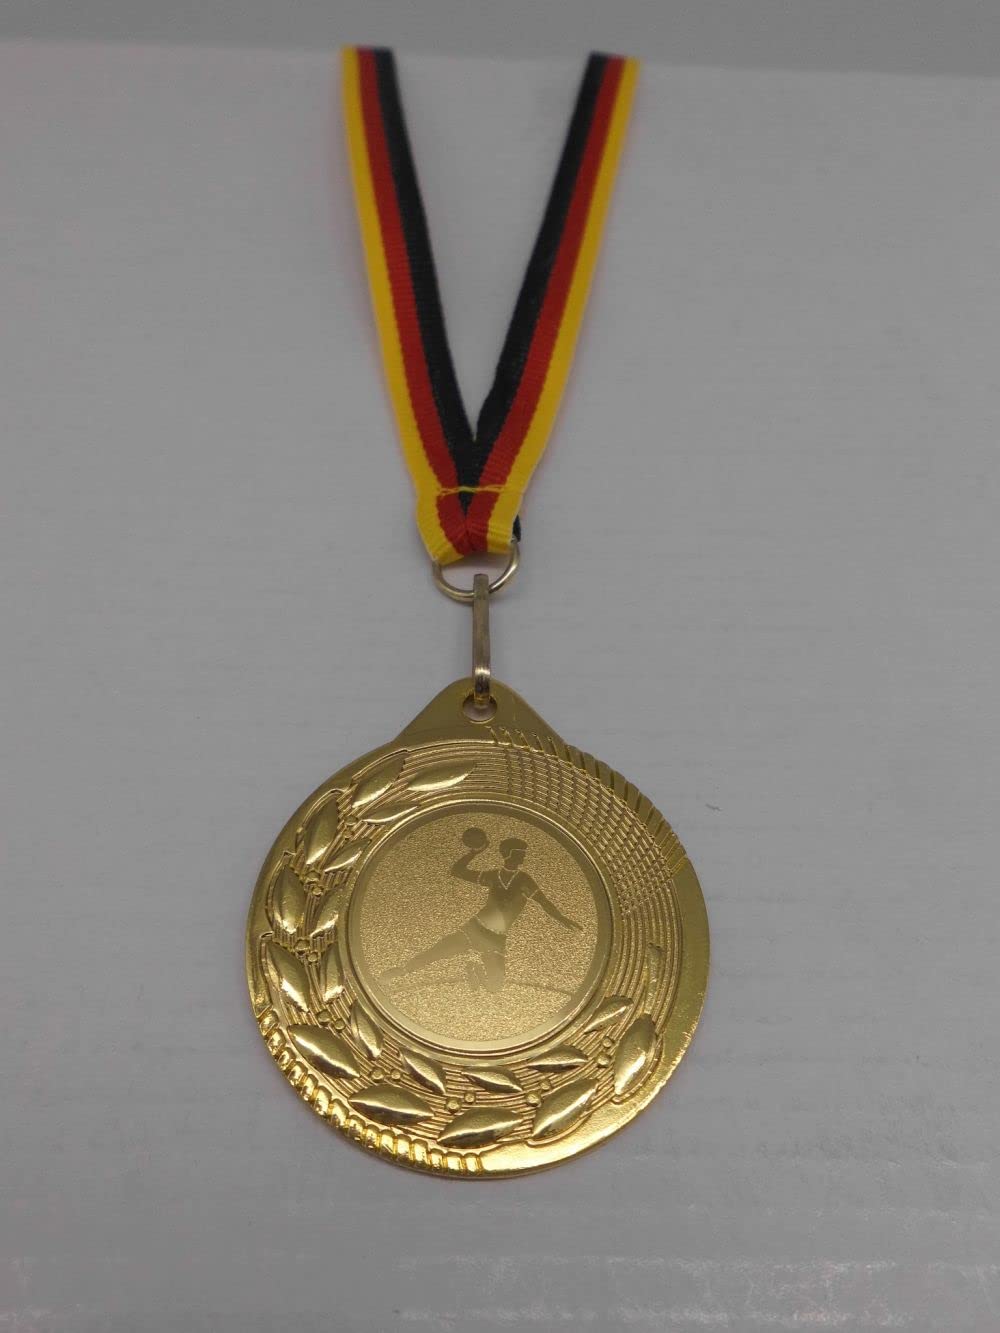 Fanshop Lünen Handball 120 Stück Medaillen aus Stahl 45mm / Gold - inkl. Medaillen-Band - mit Emblem, 25mm Turnier Herren (9292)